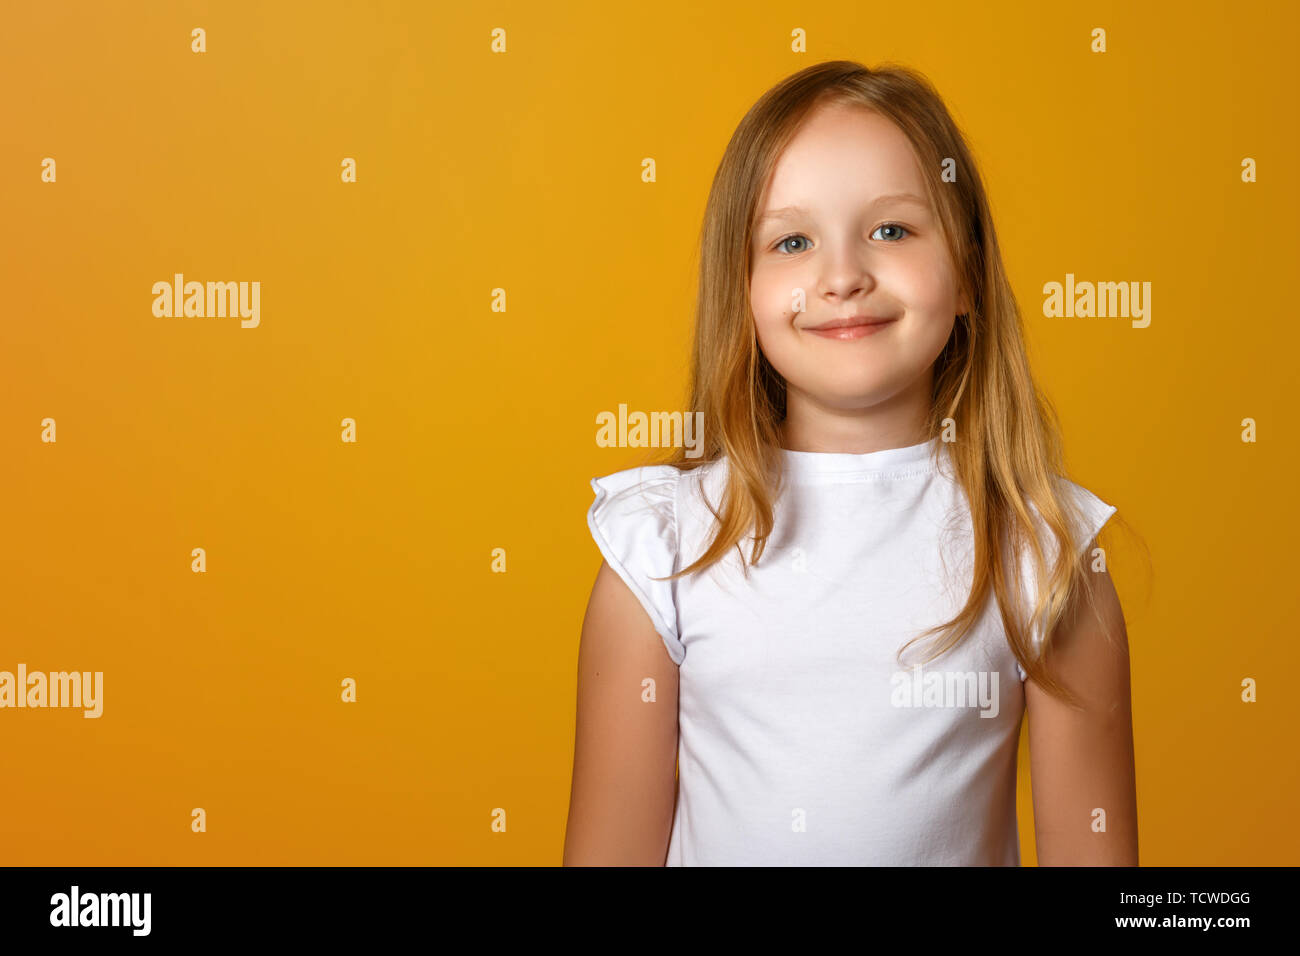 Portrait of a cute little girl sur un fond jaune. Un enfant blond sourit et regardant la caméra. Copier l'espace. Banque D'Images